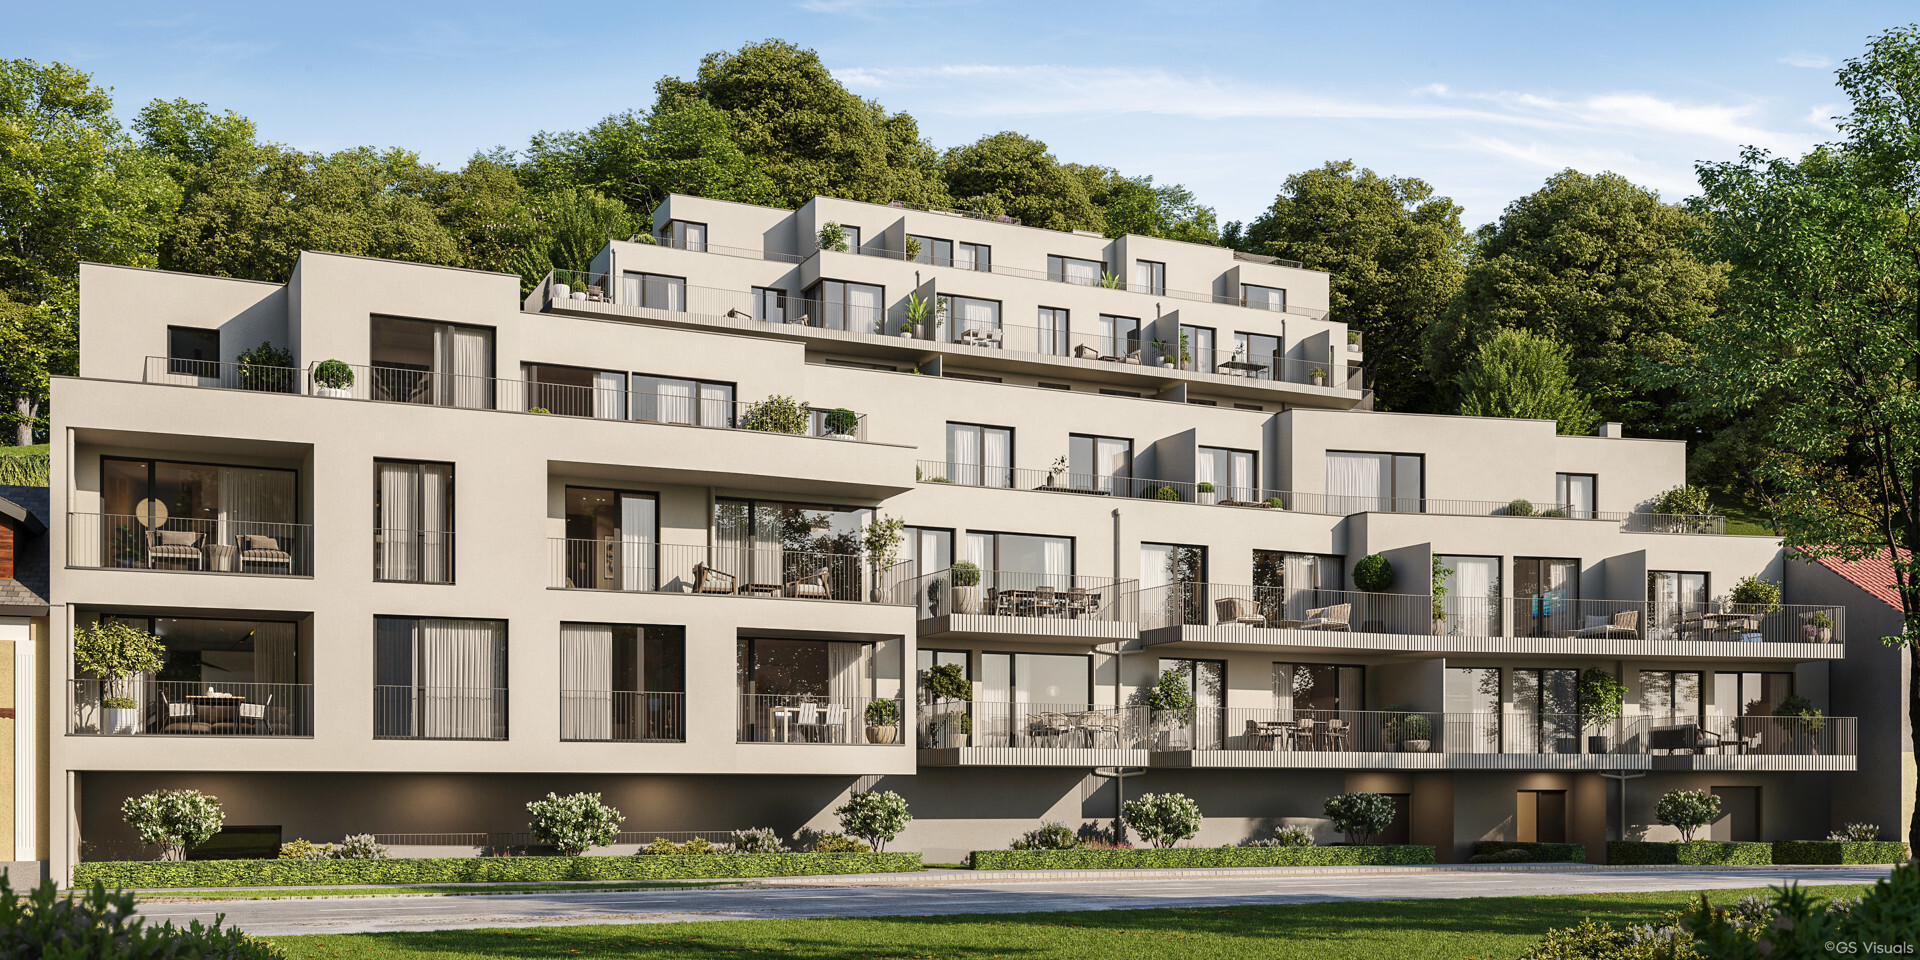 Südseitige Balkonwohnung in Grünruhelage mit Wienerwaldblick - zu kaufen in 2391 Kaltenleutgeben